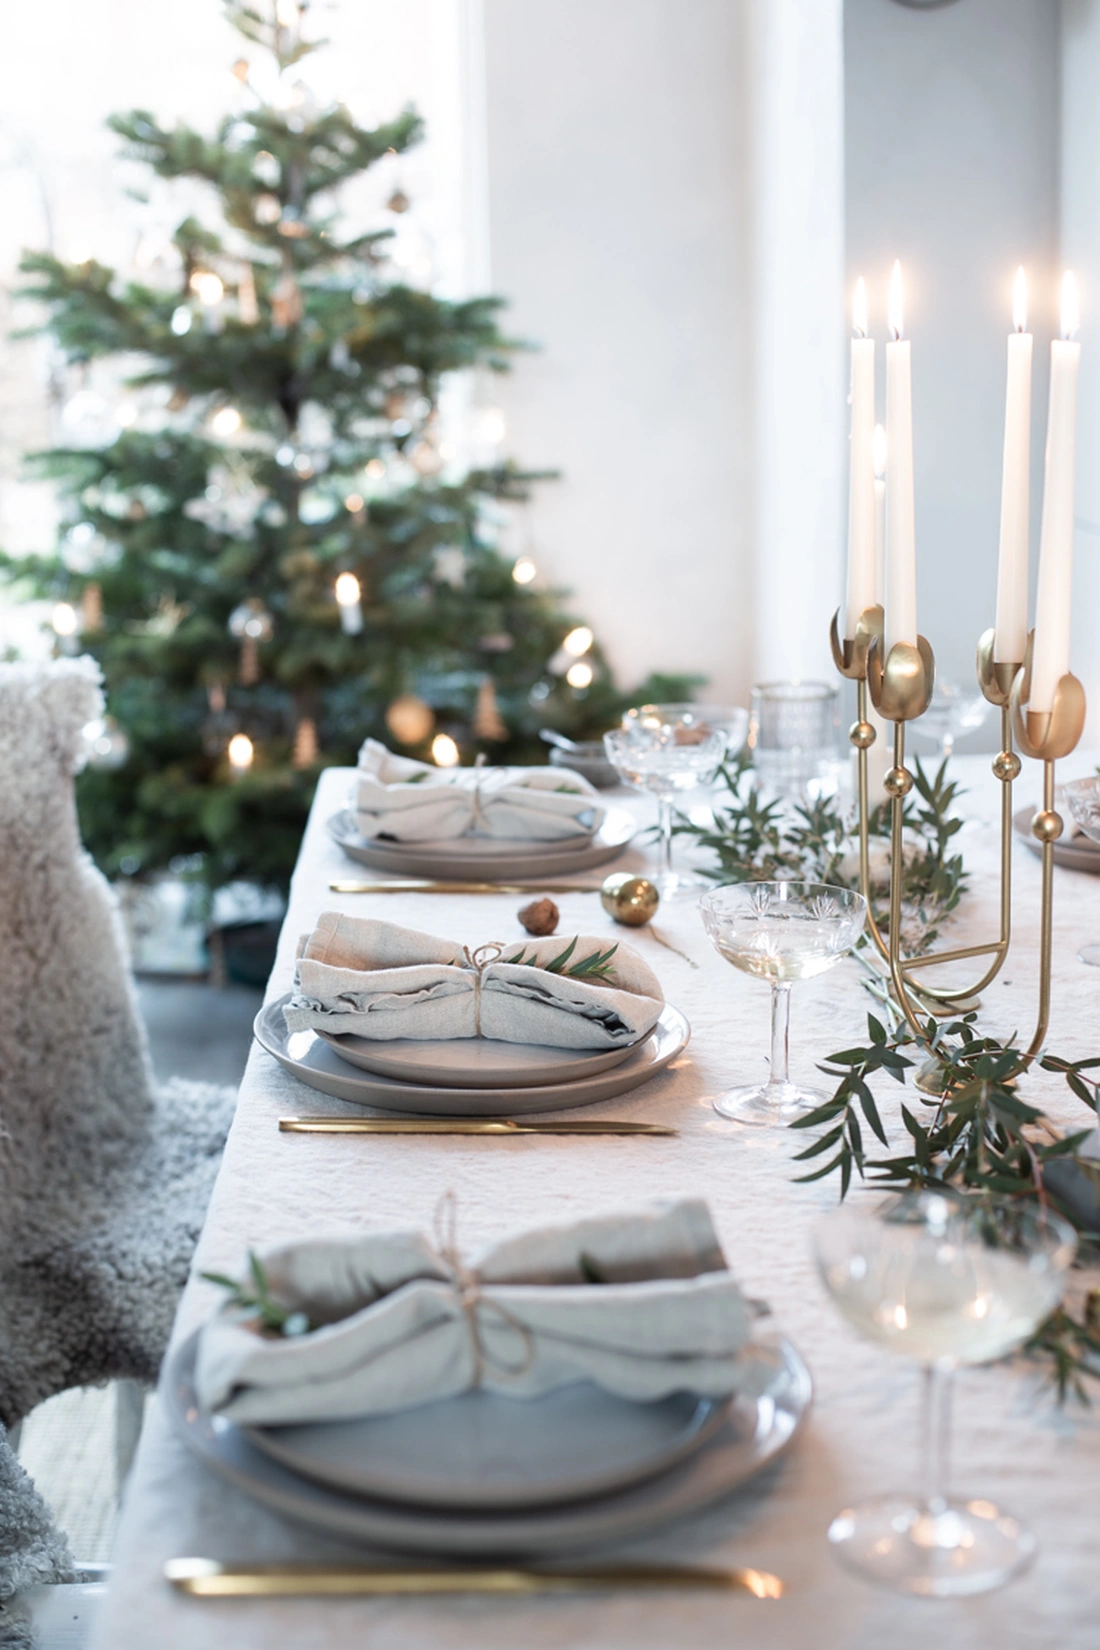 Table setting for Christmas